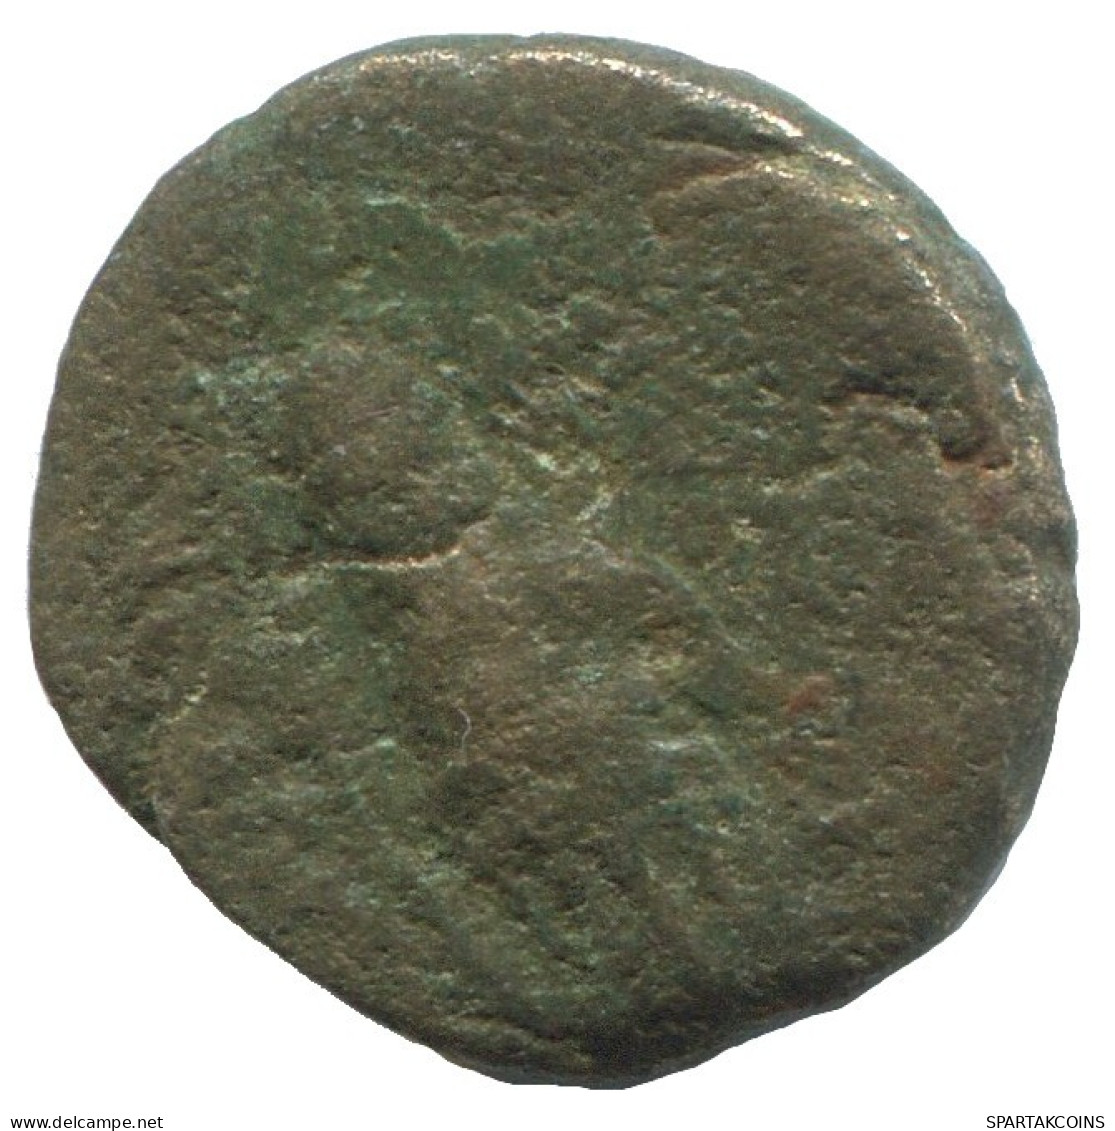 CLUB Authentic Original Ancient GREEK Coin 1.8g/14mm #NNN1173.9.U.A - Grecques